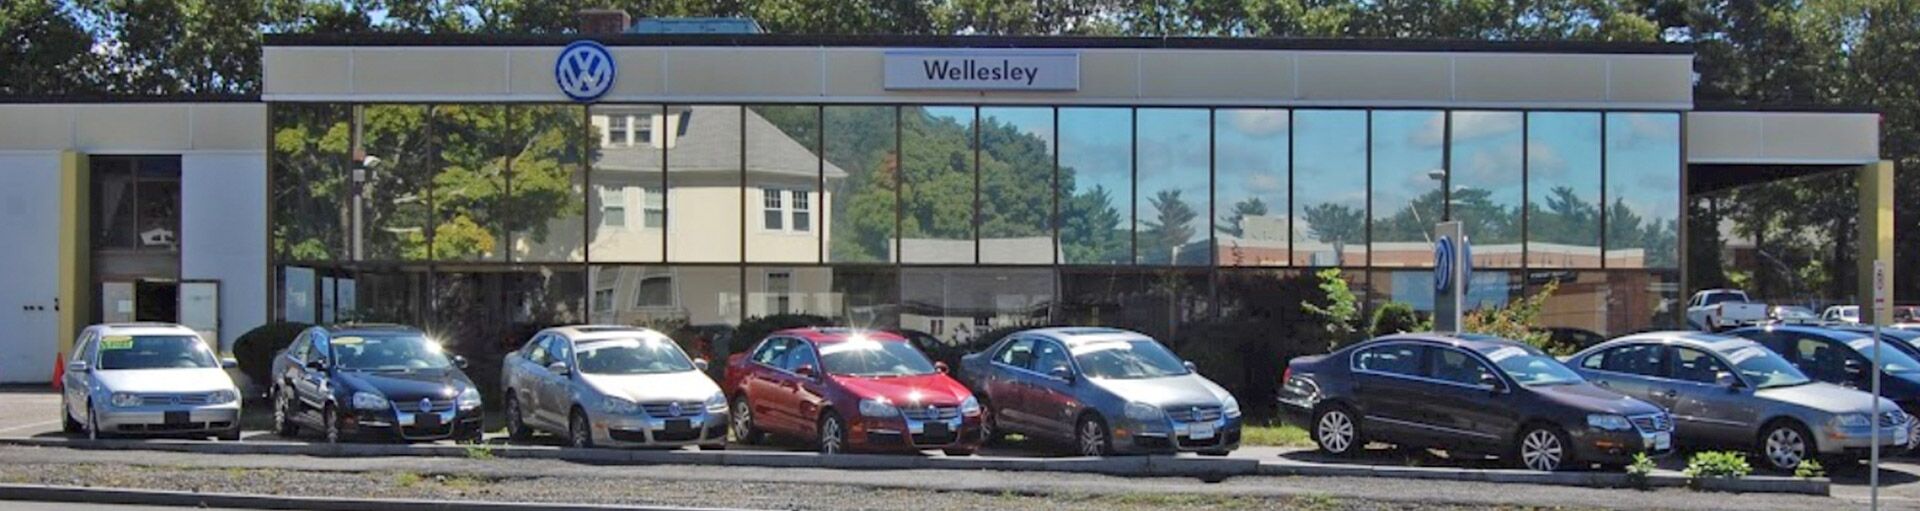 Wellesley Volkswagen HVAC Services